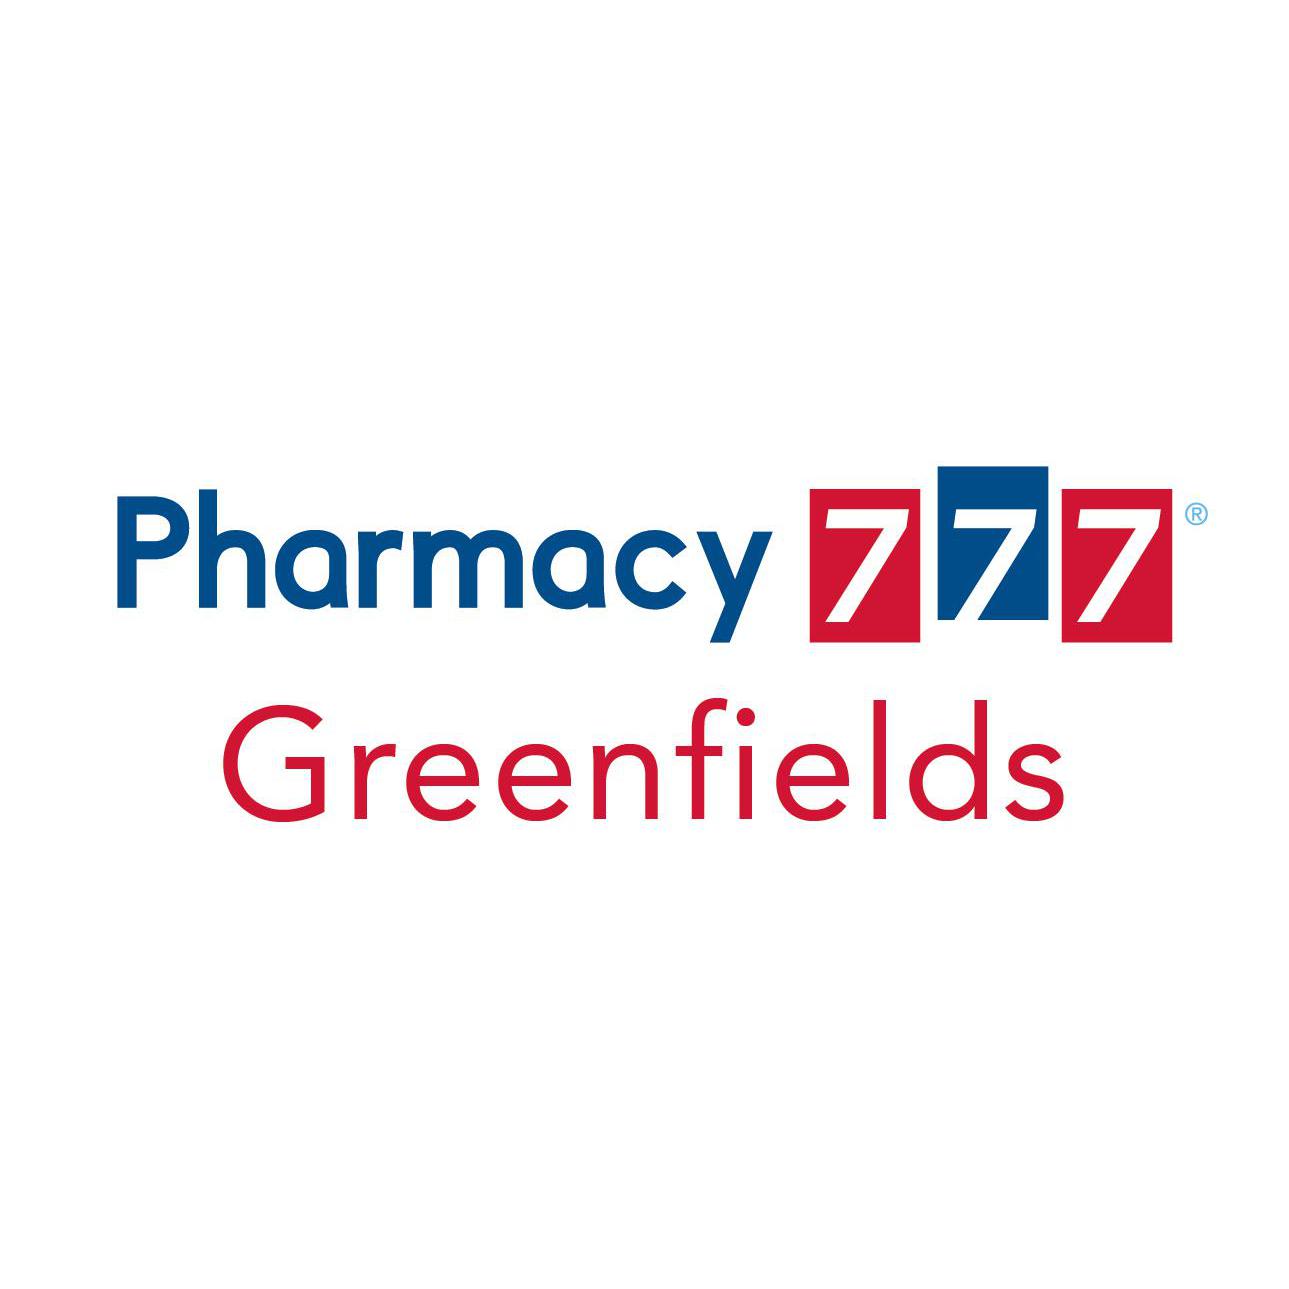 Pharmacy 777 Greenfields Logo